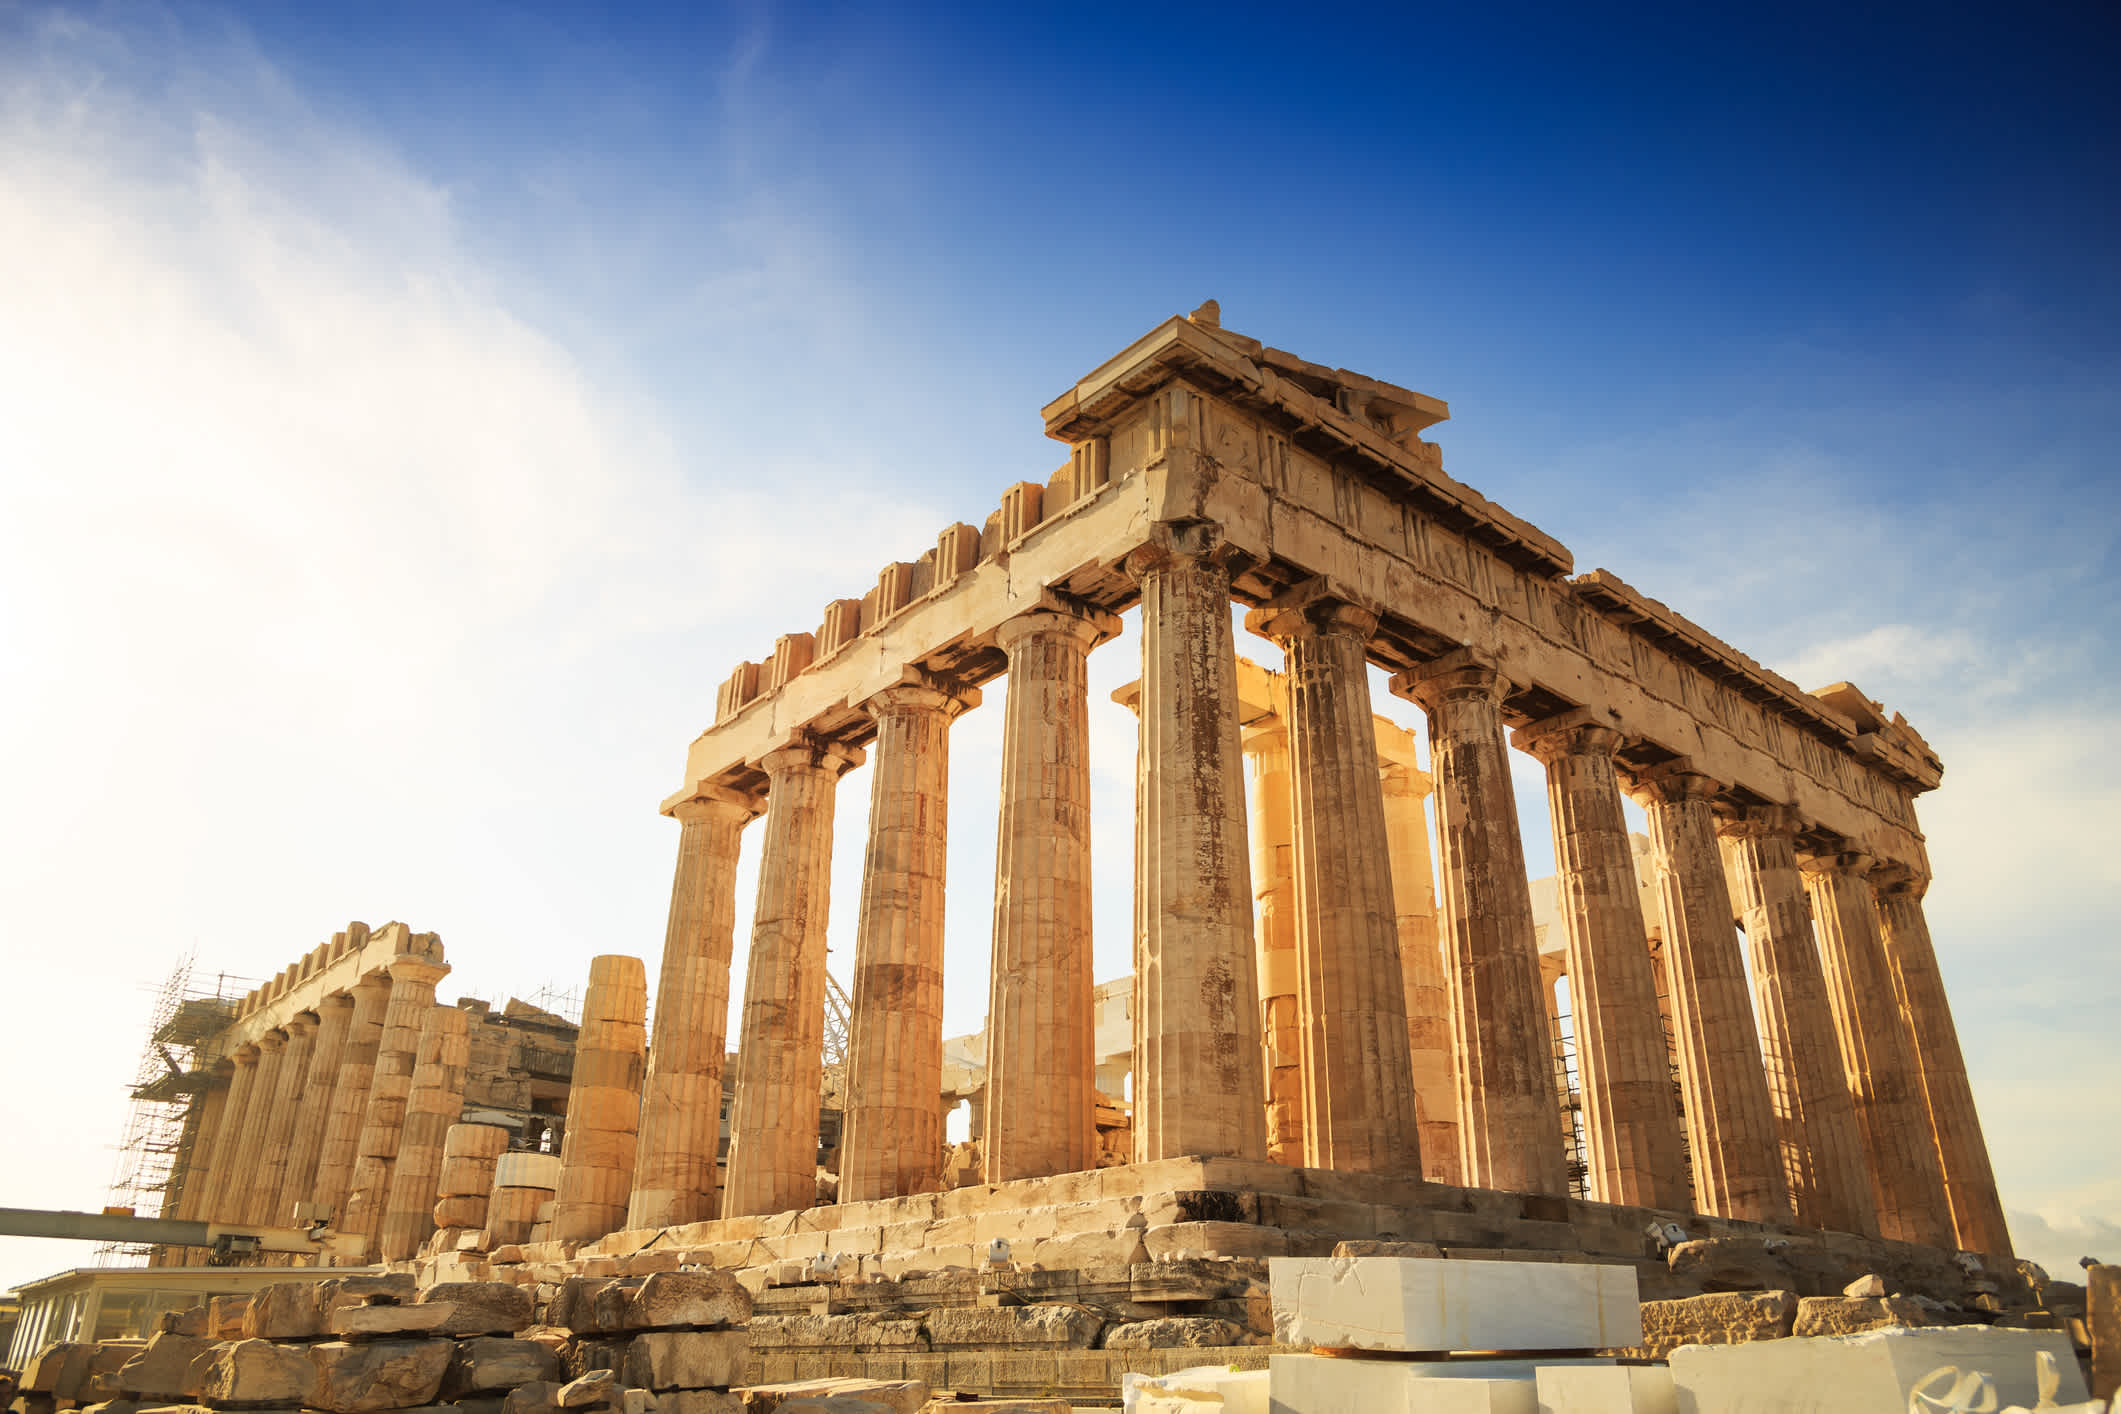 Blick auf eine Ruine in Athen, von denen es während eines Athen Urlaubs viele zu bestaunen gibt.